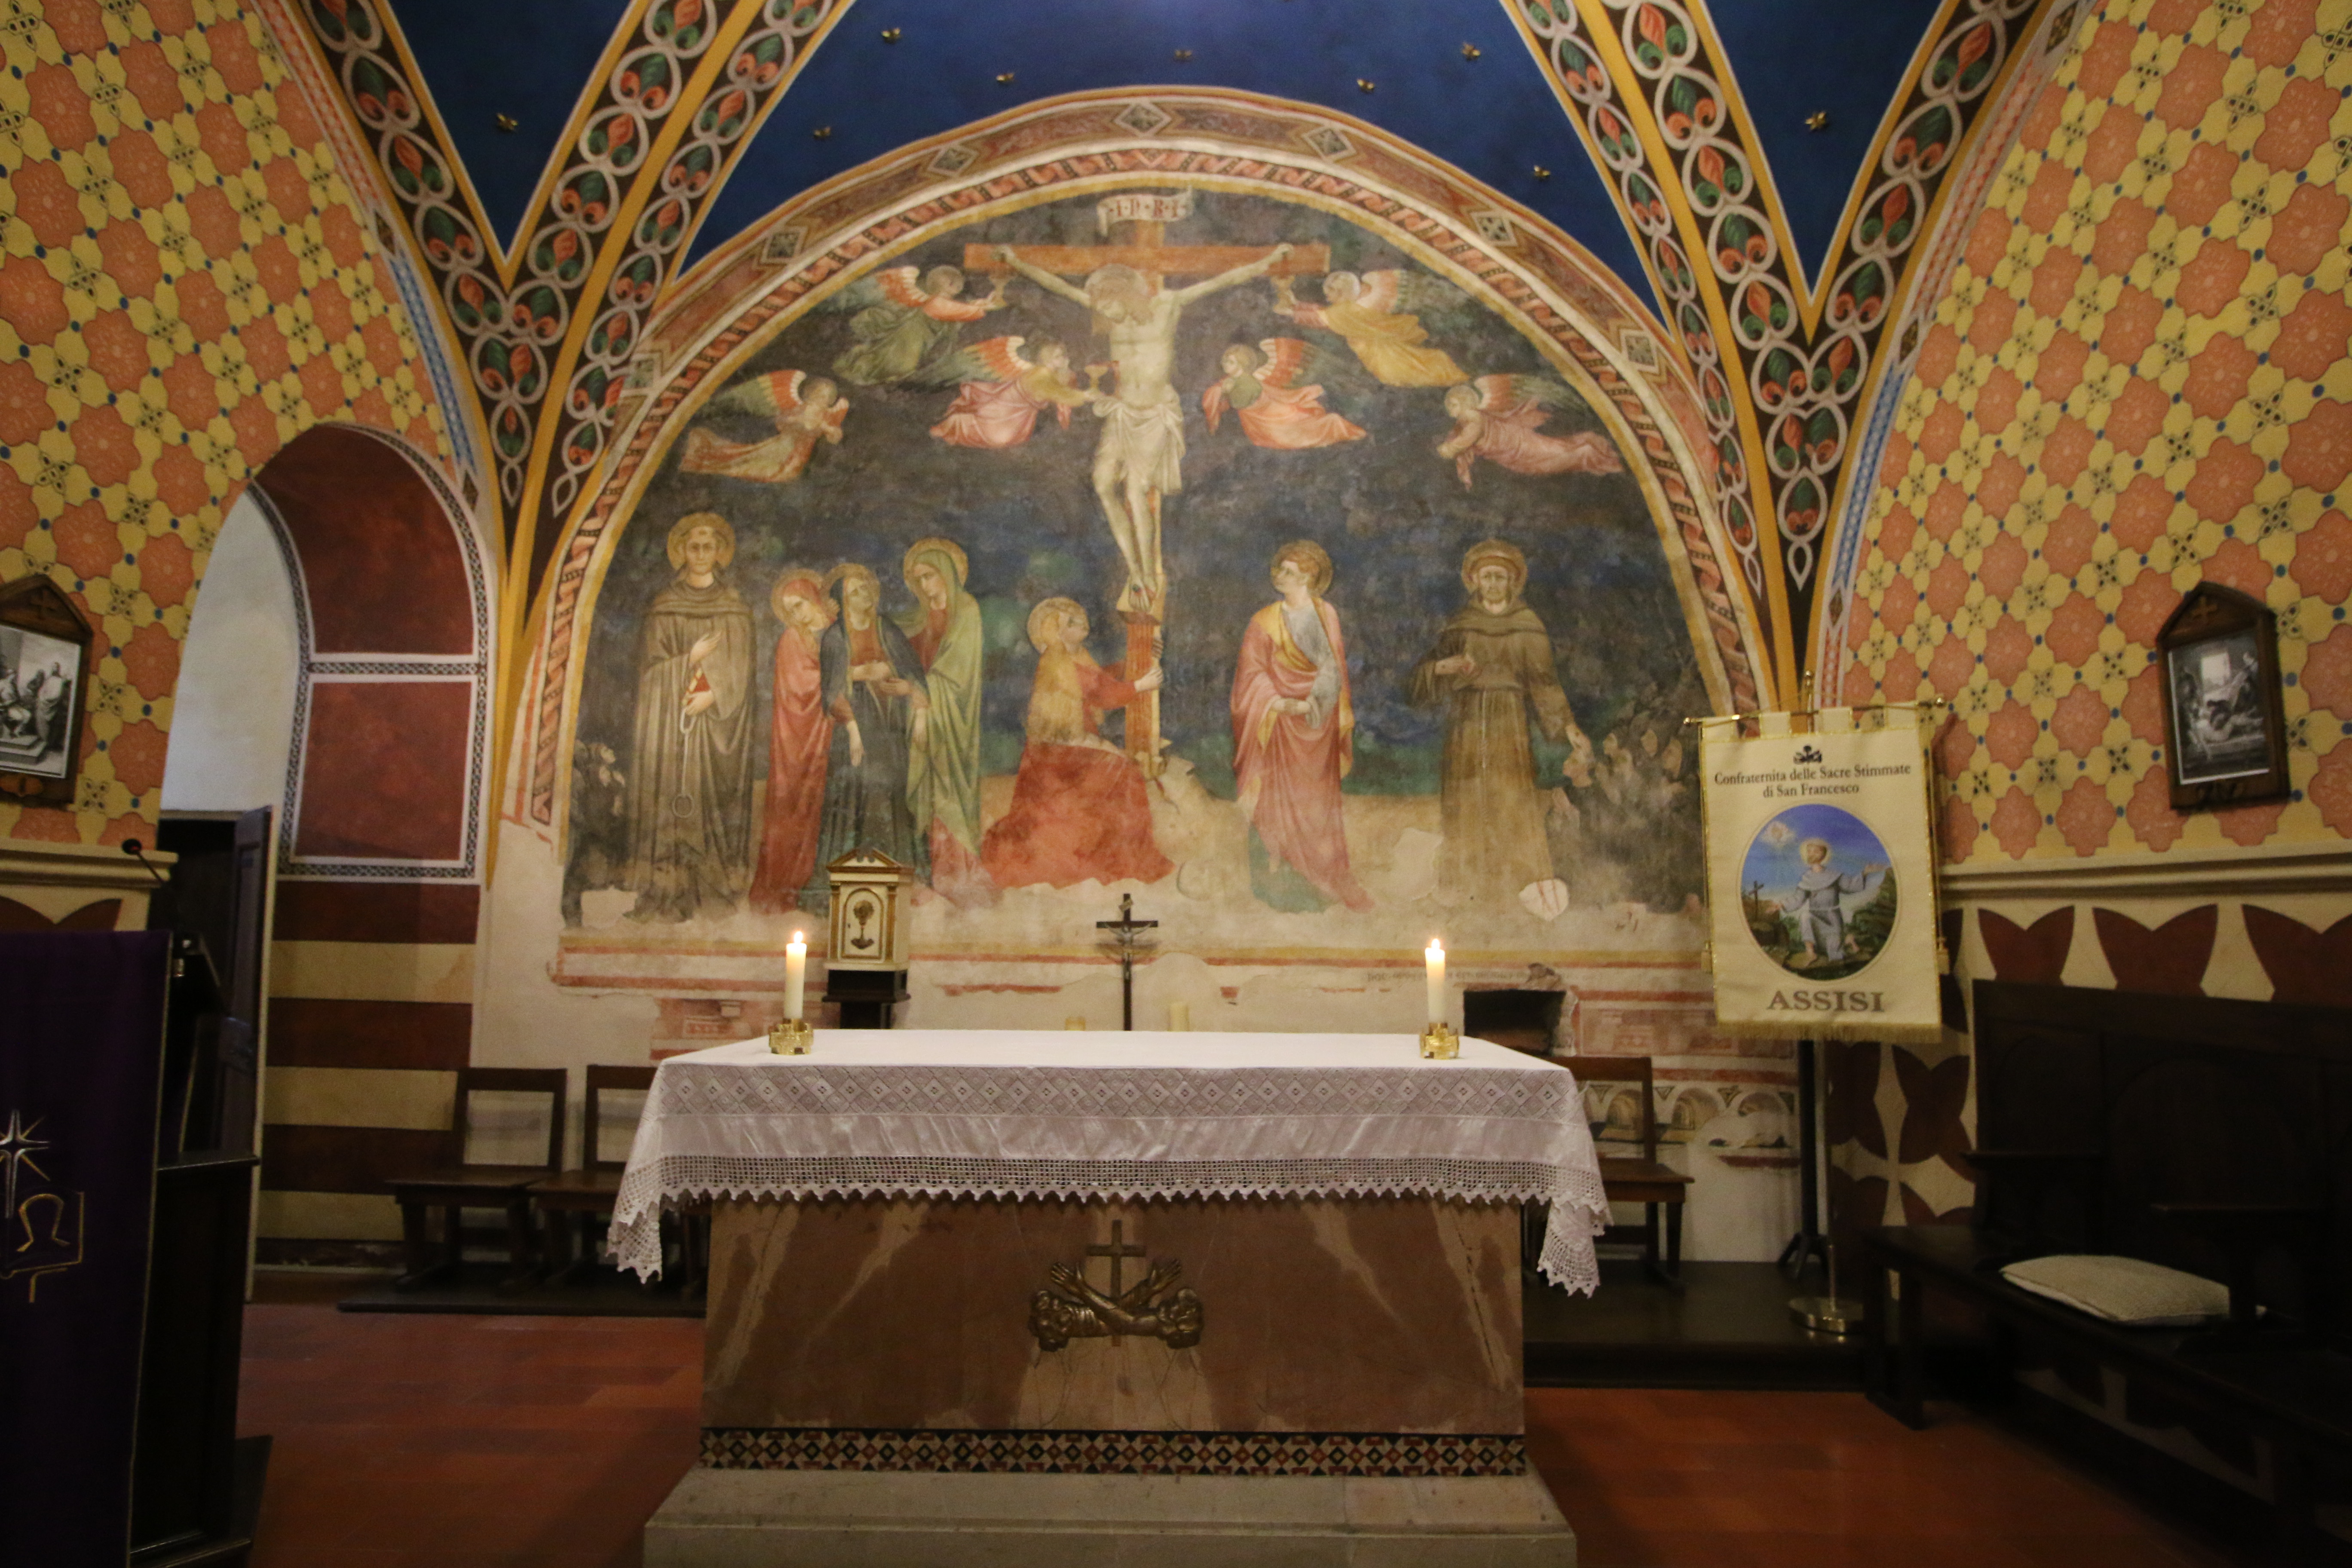 The ornate inside of St Leonards.